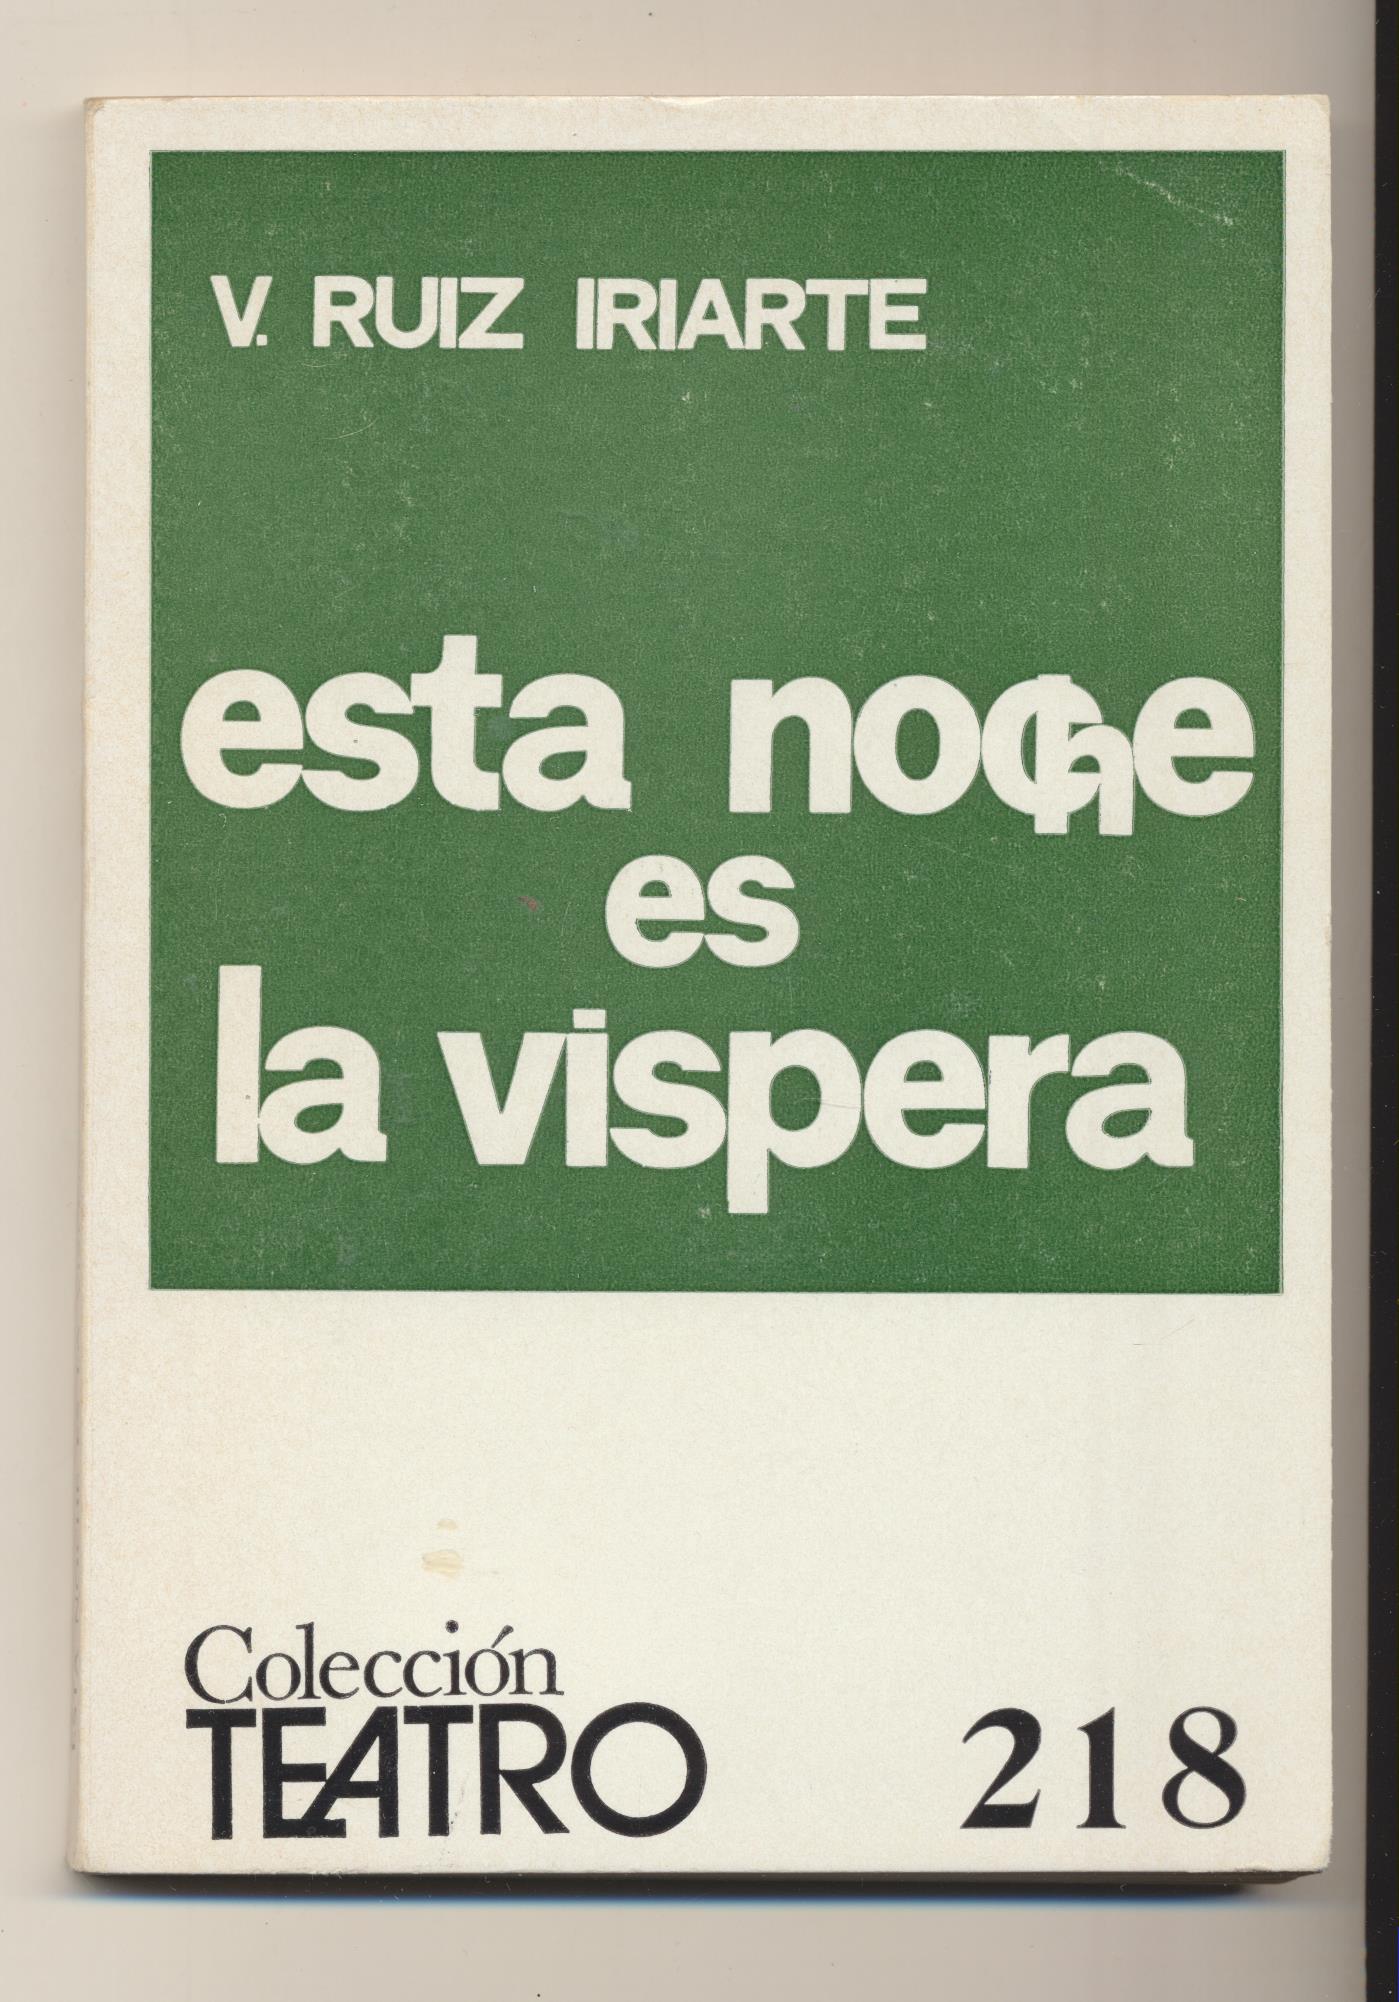 Colección Teatro nº 218. V. Ruiz Iriarte. Esta noche es la víspera. Escelicer 1973